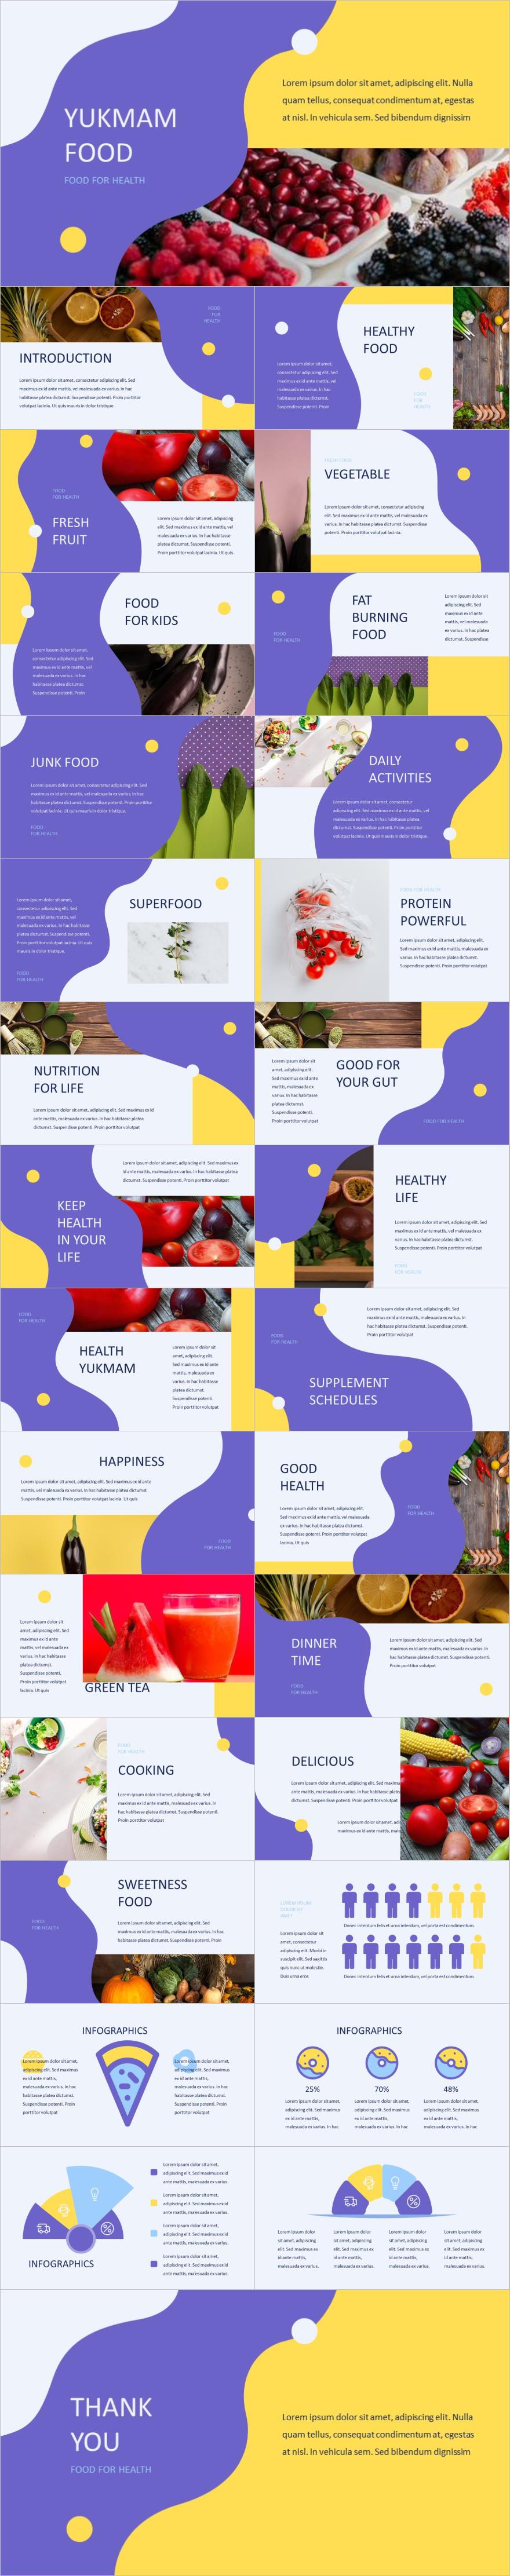 黄紫色简约风健康食品介绍PPT模板免费下载